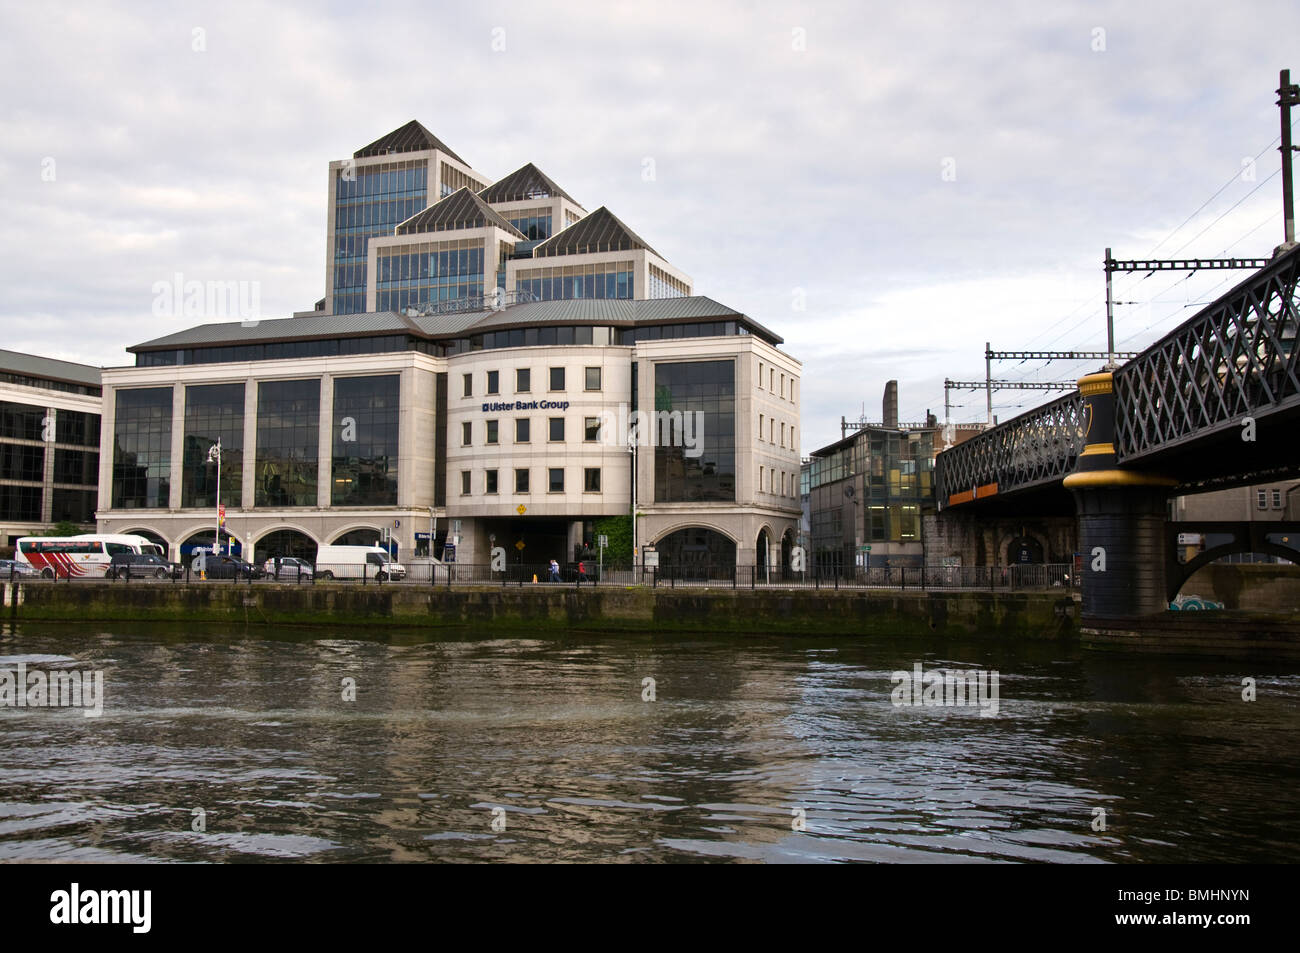 Ulster Bank Group siège par la rivière Liffey, dans la capitale Dublin Banque D'Images